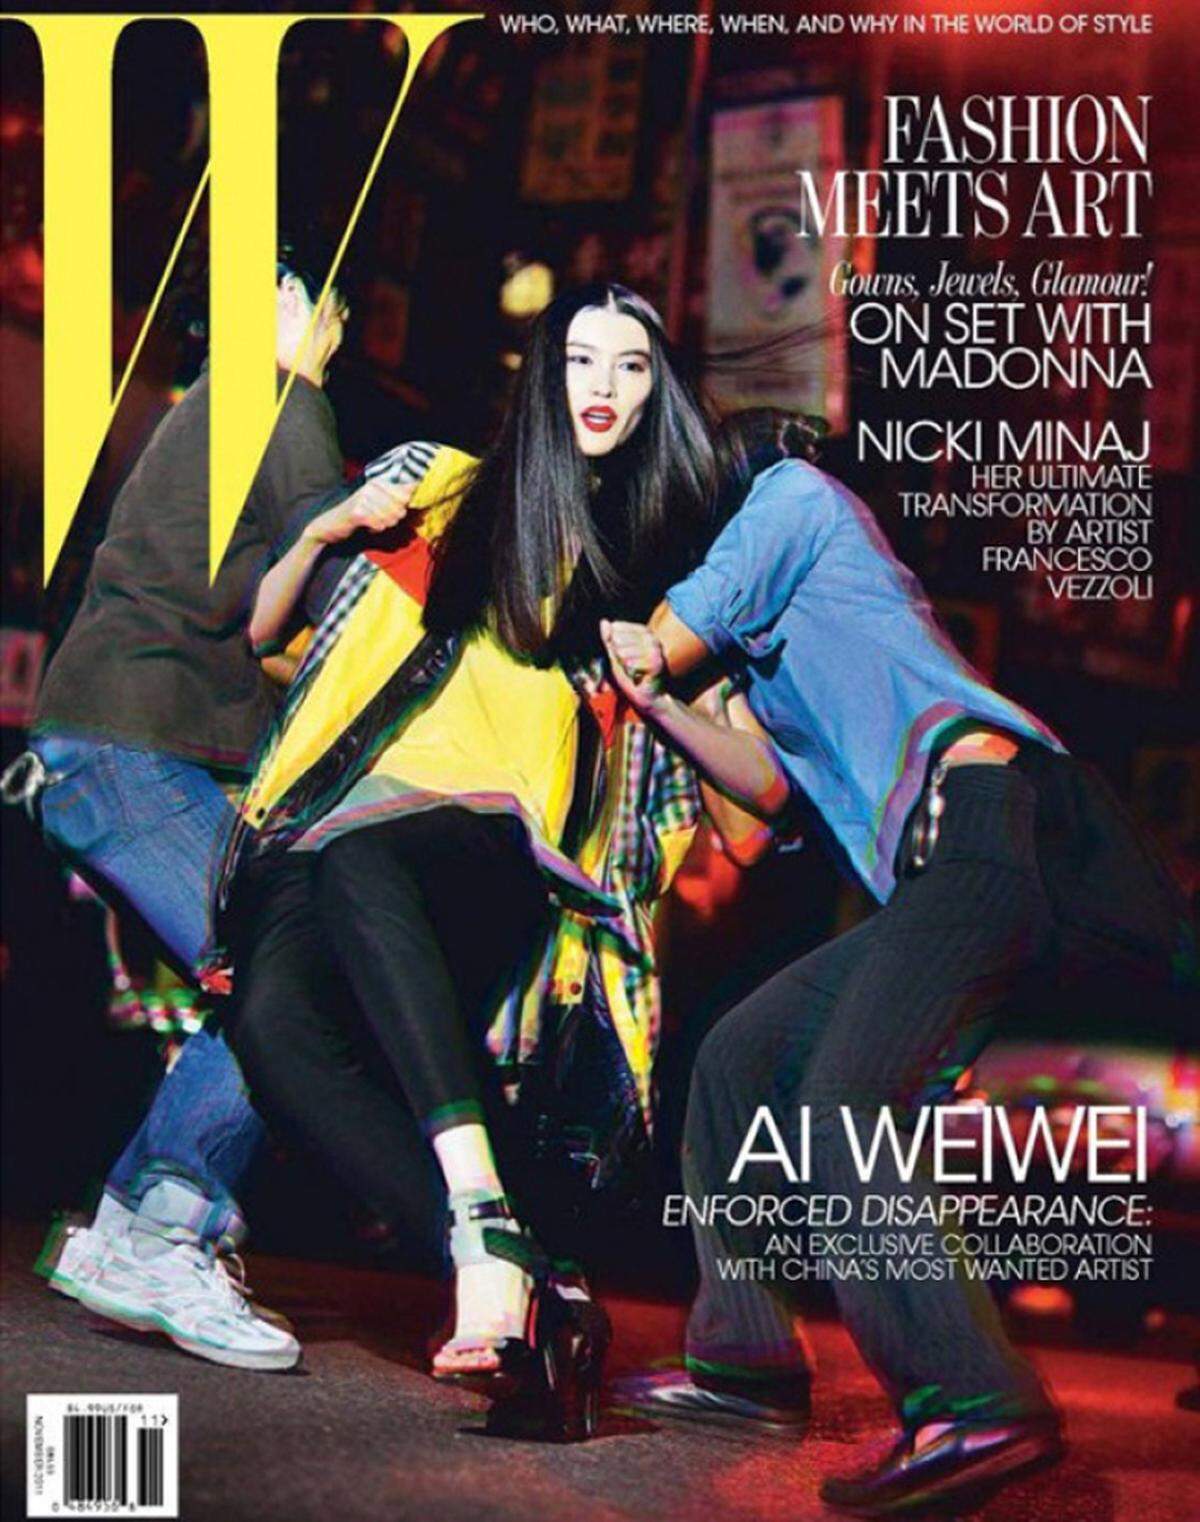 Das W Magazin beauftragte im November 2011 den chinesischen Deserteur und Künstler Ai Wie Wei für das Cover. Model Sui He spielte die Szene nach, in der er gewaltsam festgenommen wurde.